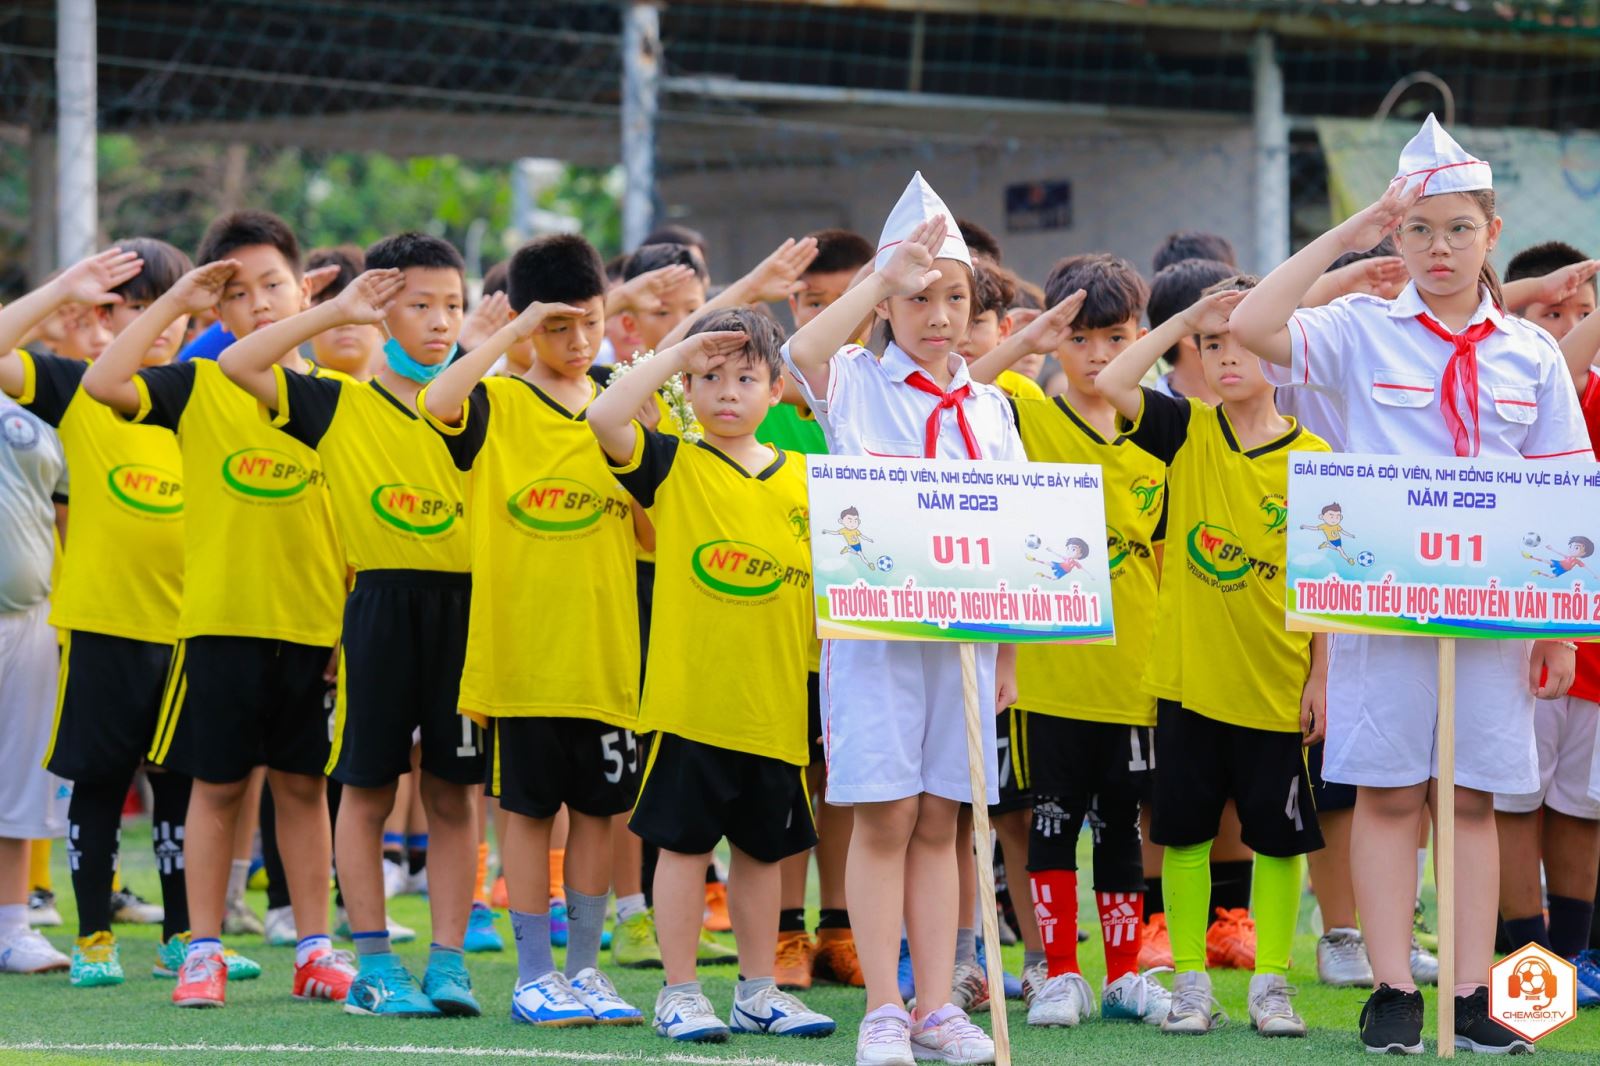 Phường 11: Tổ chức Giải bóng đá đội viên, nhi đồng U11, U12 khu vực Bảy Hiền - năm 2023.